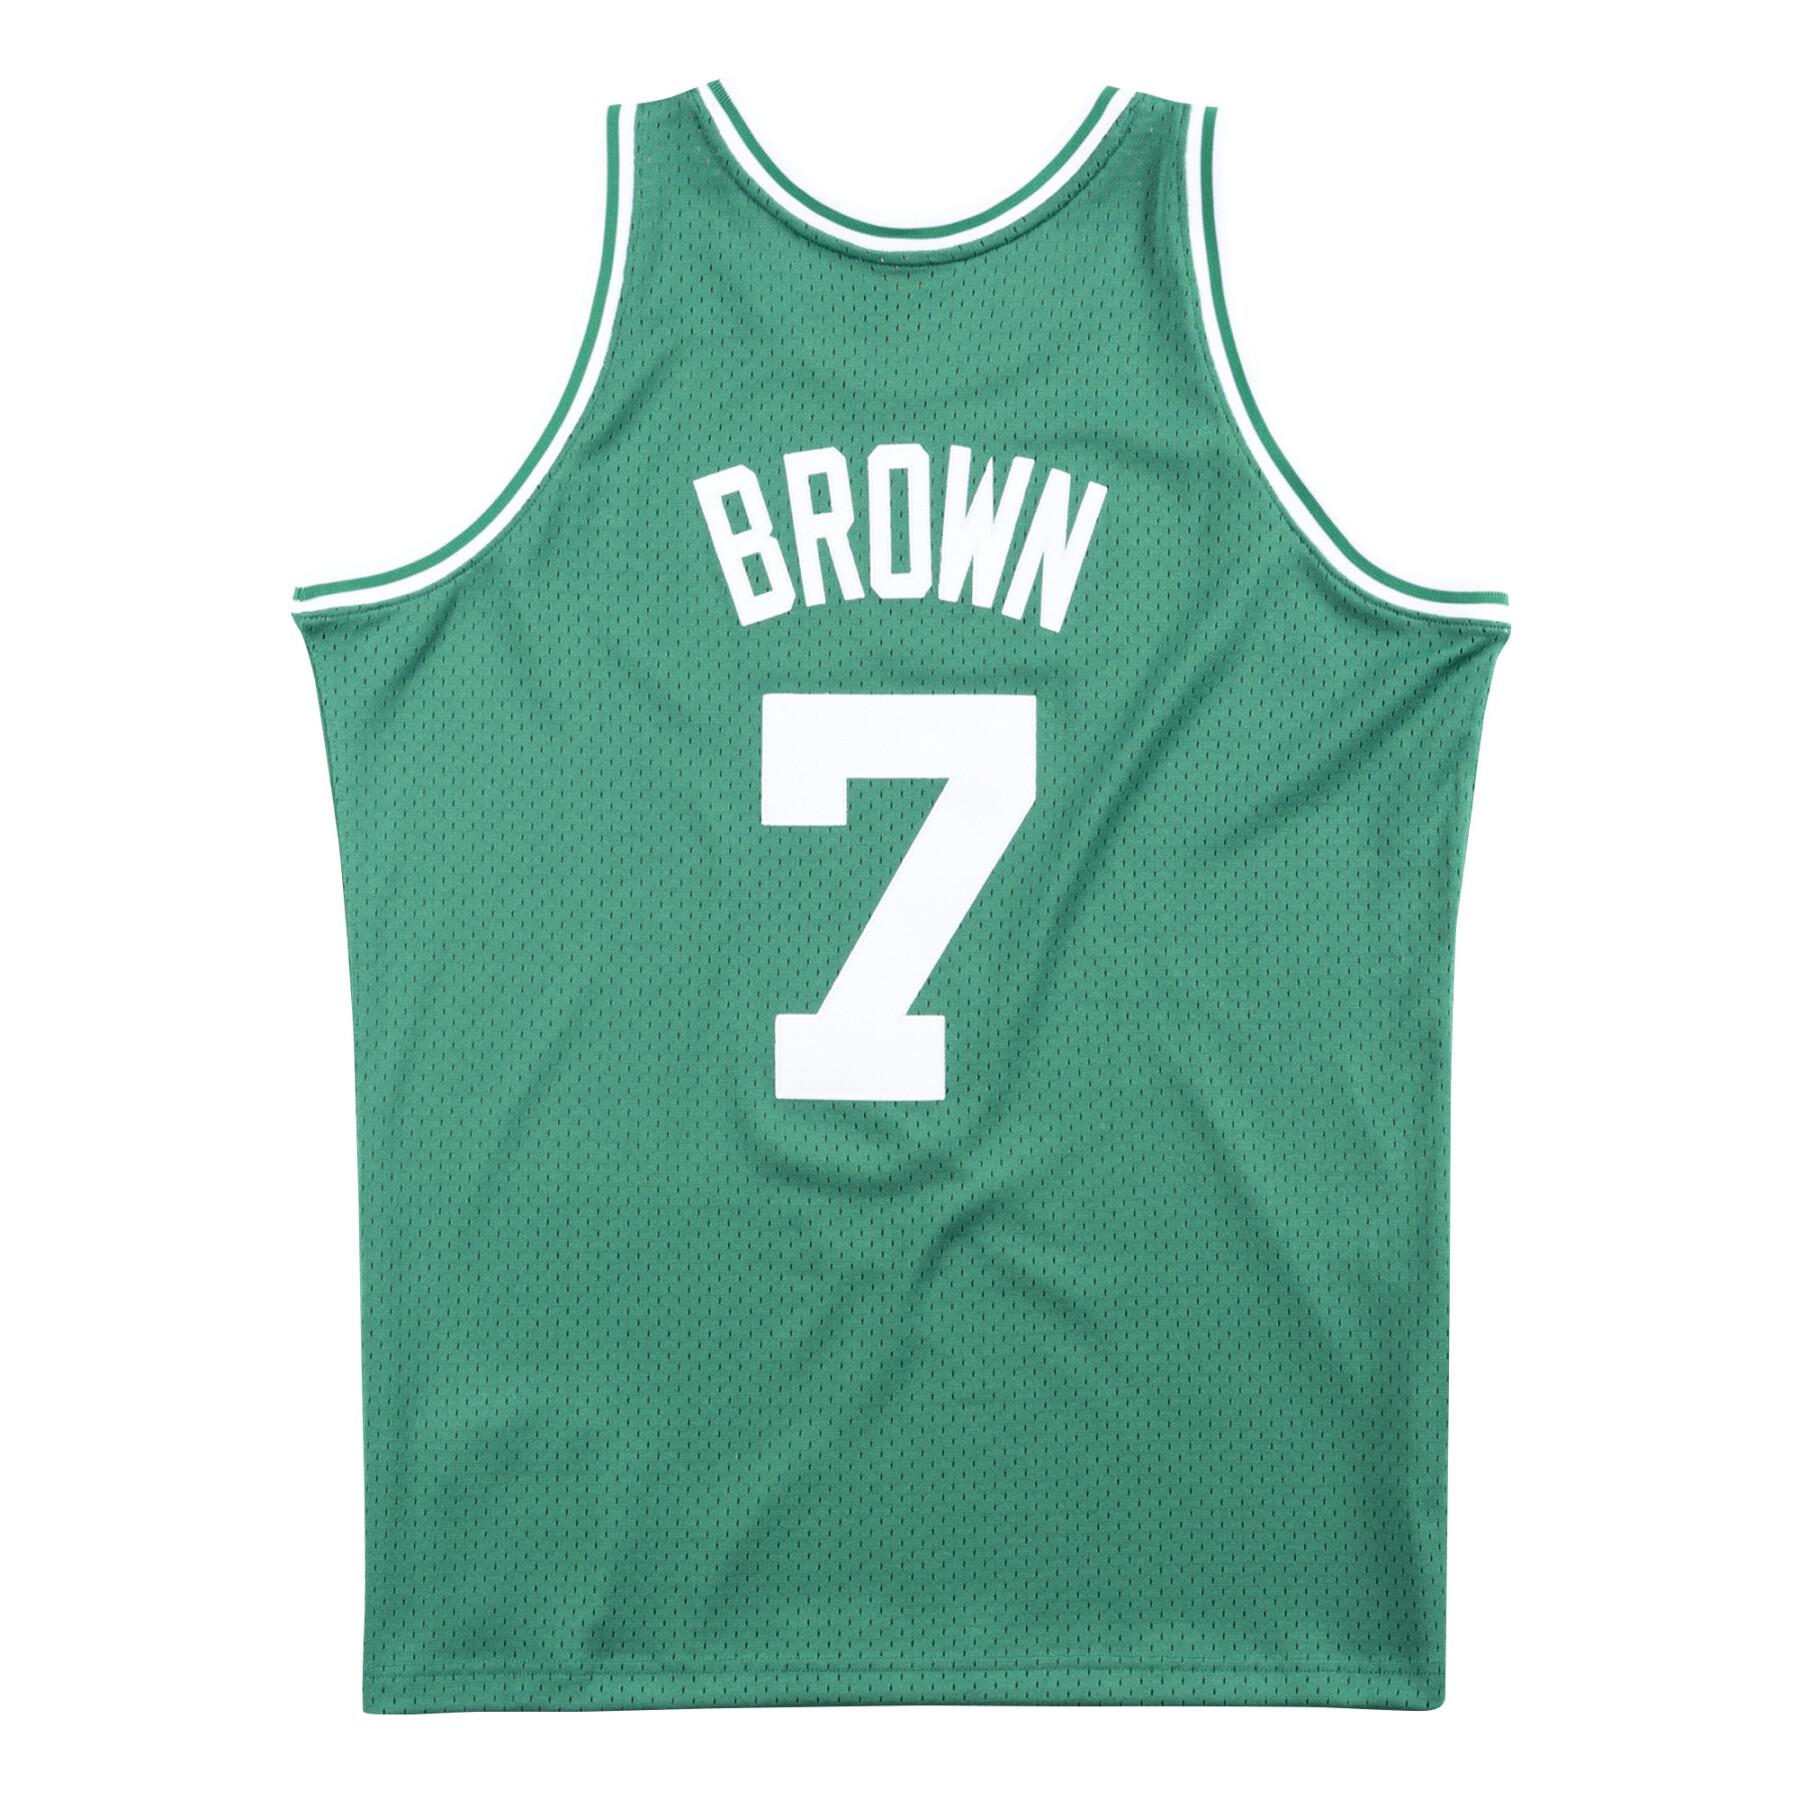 Swingman jersey Boston Celtics Dee Brown